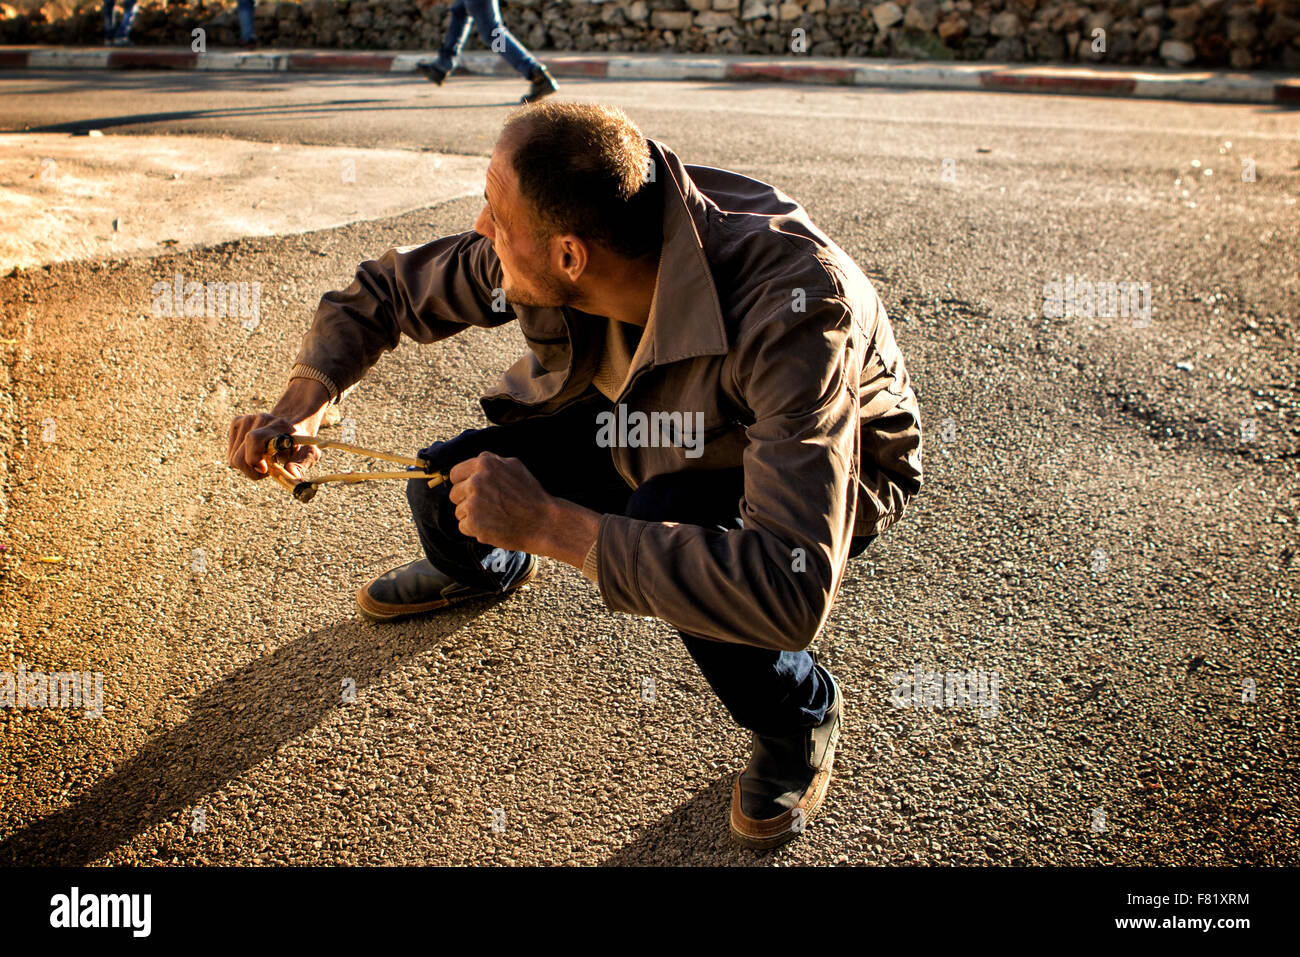 Près de Ramallah, Cisjordanie, Proche-Orient. 4 Décembre, 2015. Un Palestinien de forêt sa fronde à l'égard des soldats israéliens lors d'affrontements ce vendredi près de Ramallah, Cisjordanie Crédit : Rey T. Byhre/Alamy Live News Banque D'Images